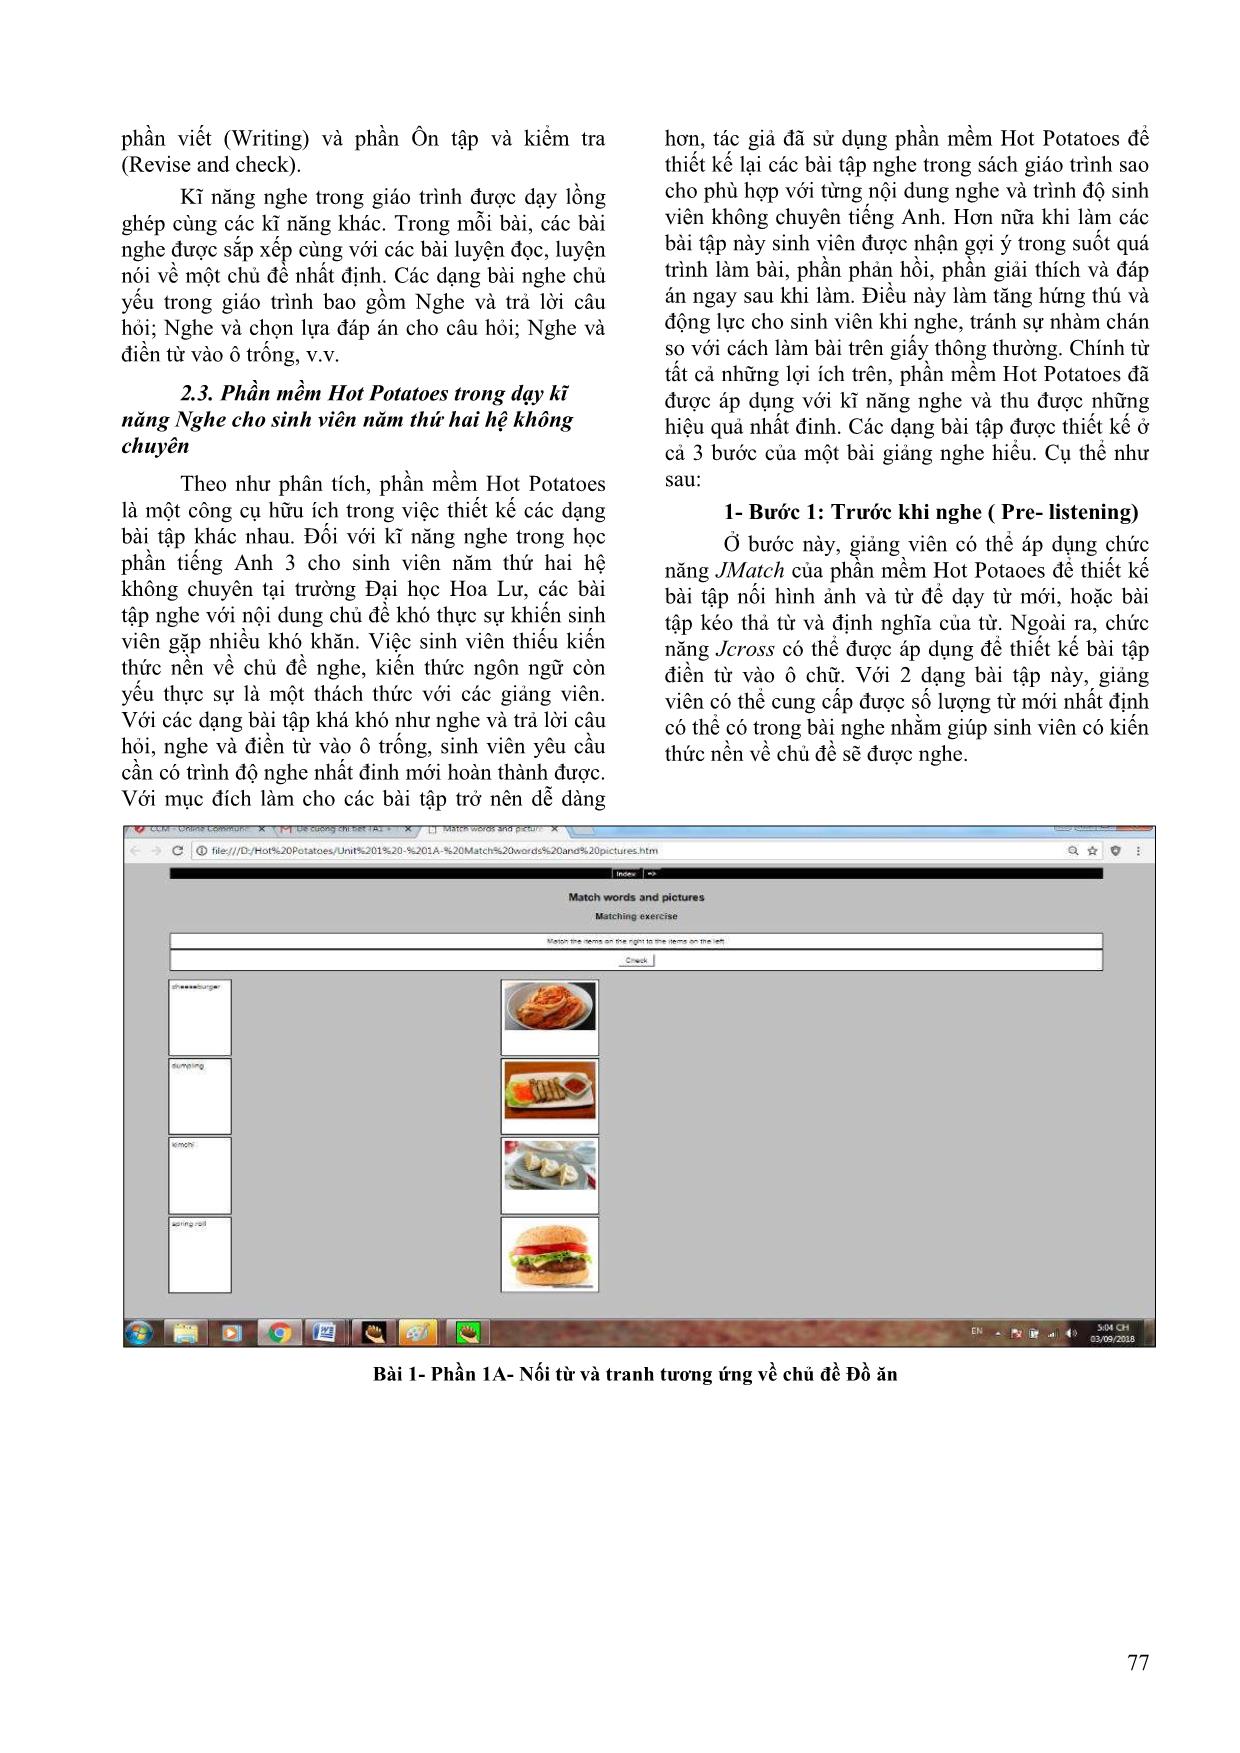 Ứng dụng phần mềm hot potatoes trong dạy và học kĩ năng nghe cho sinh viên hệ không chuyên trang 4